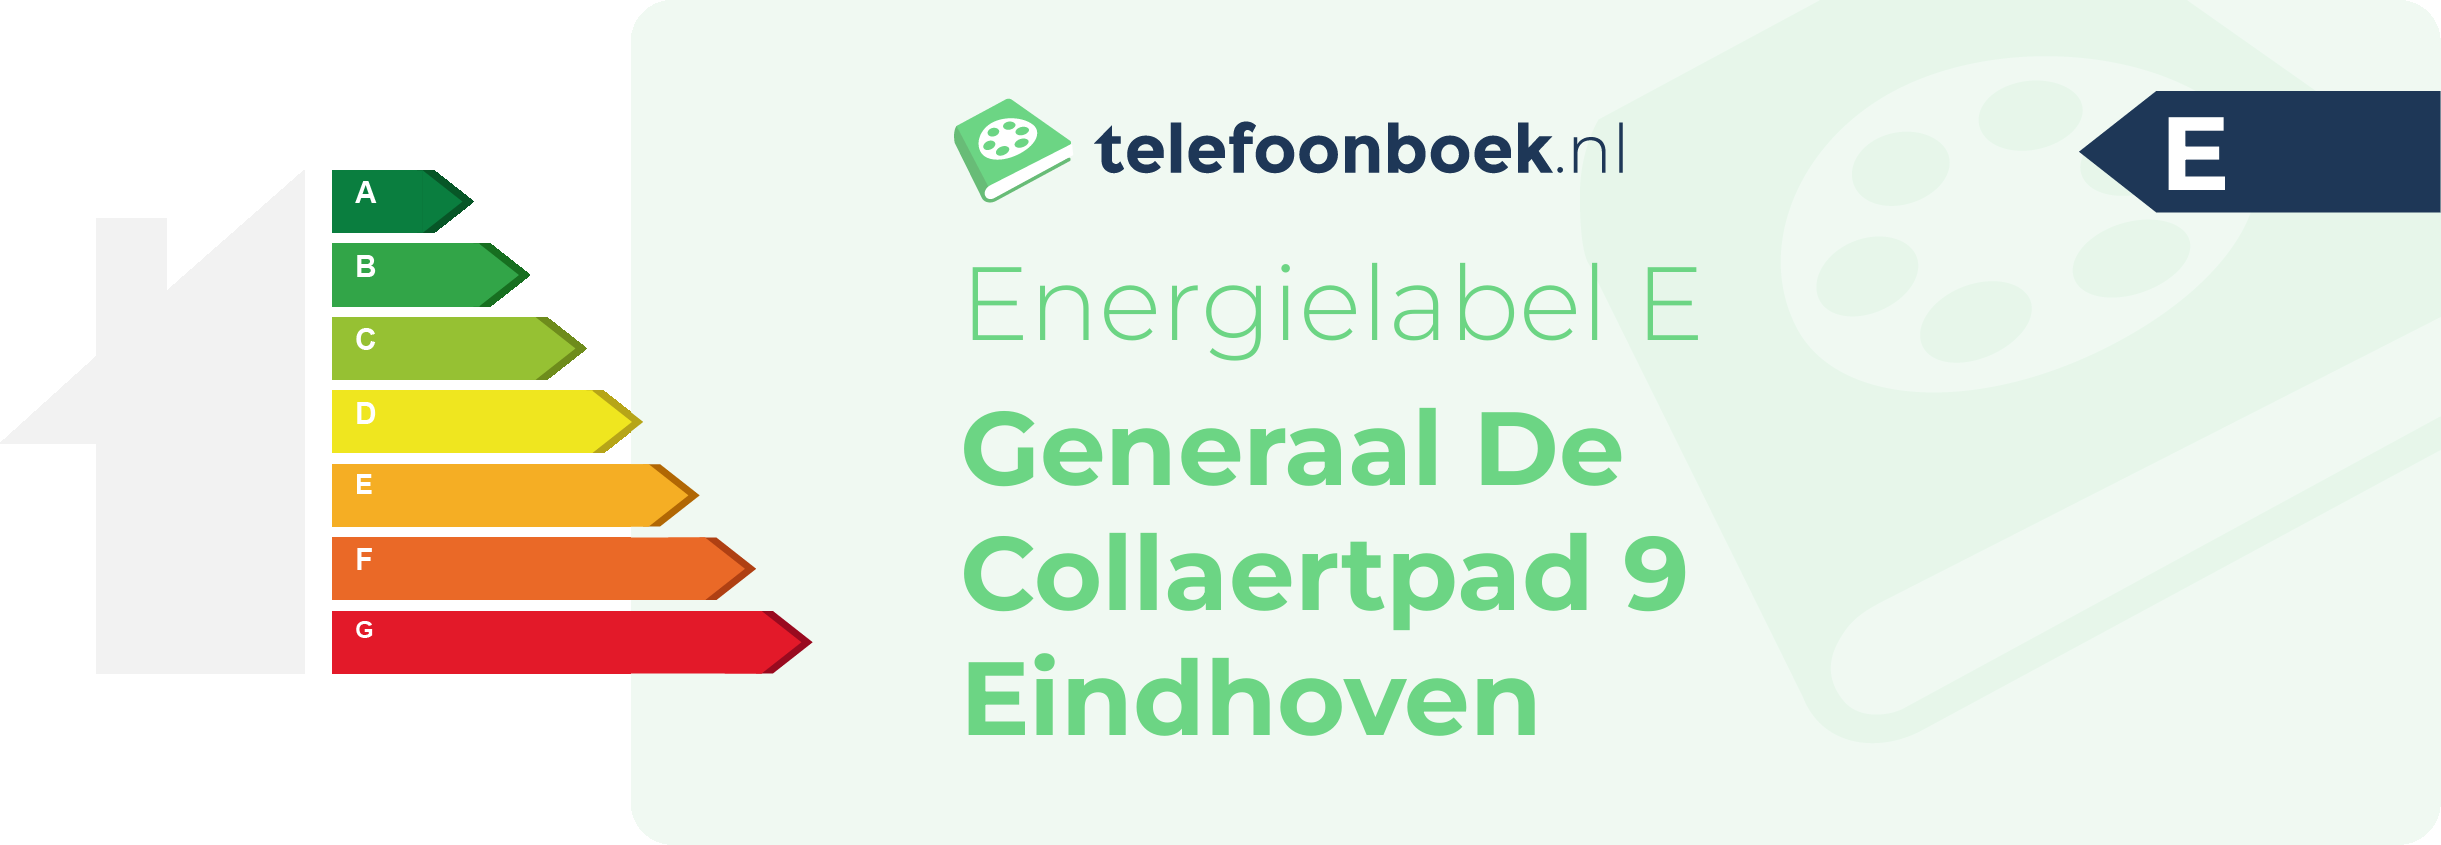 Energielabel Generaal De Collaertpad 9 Eindhoven